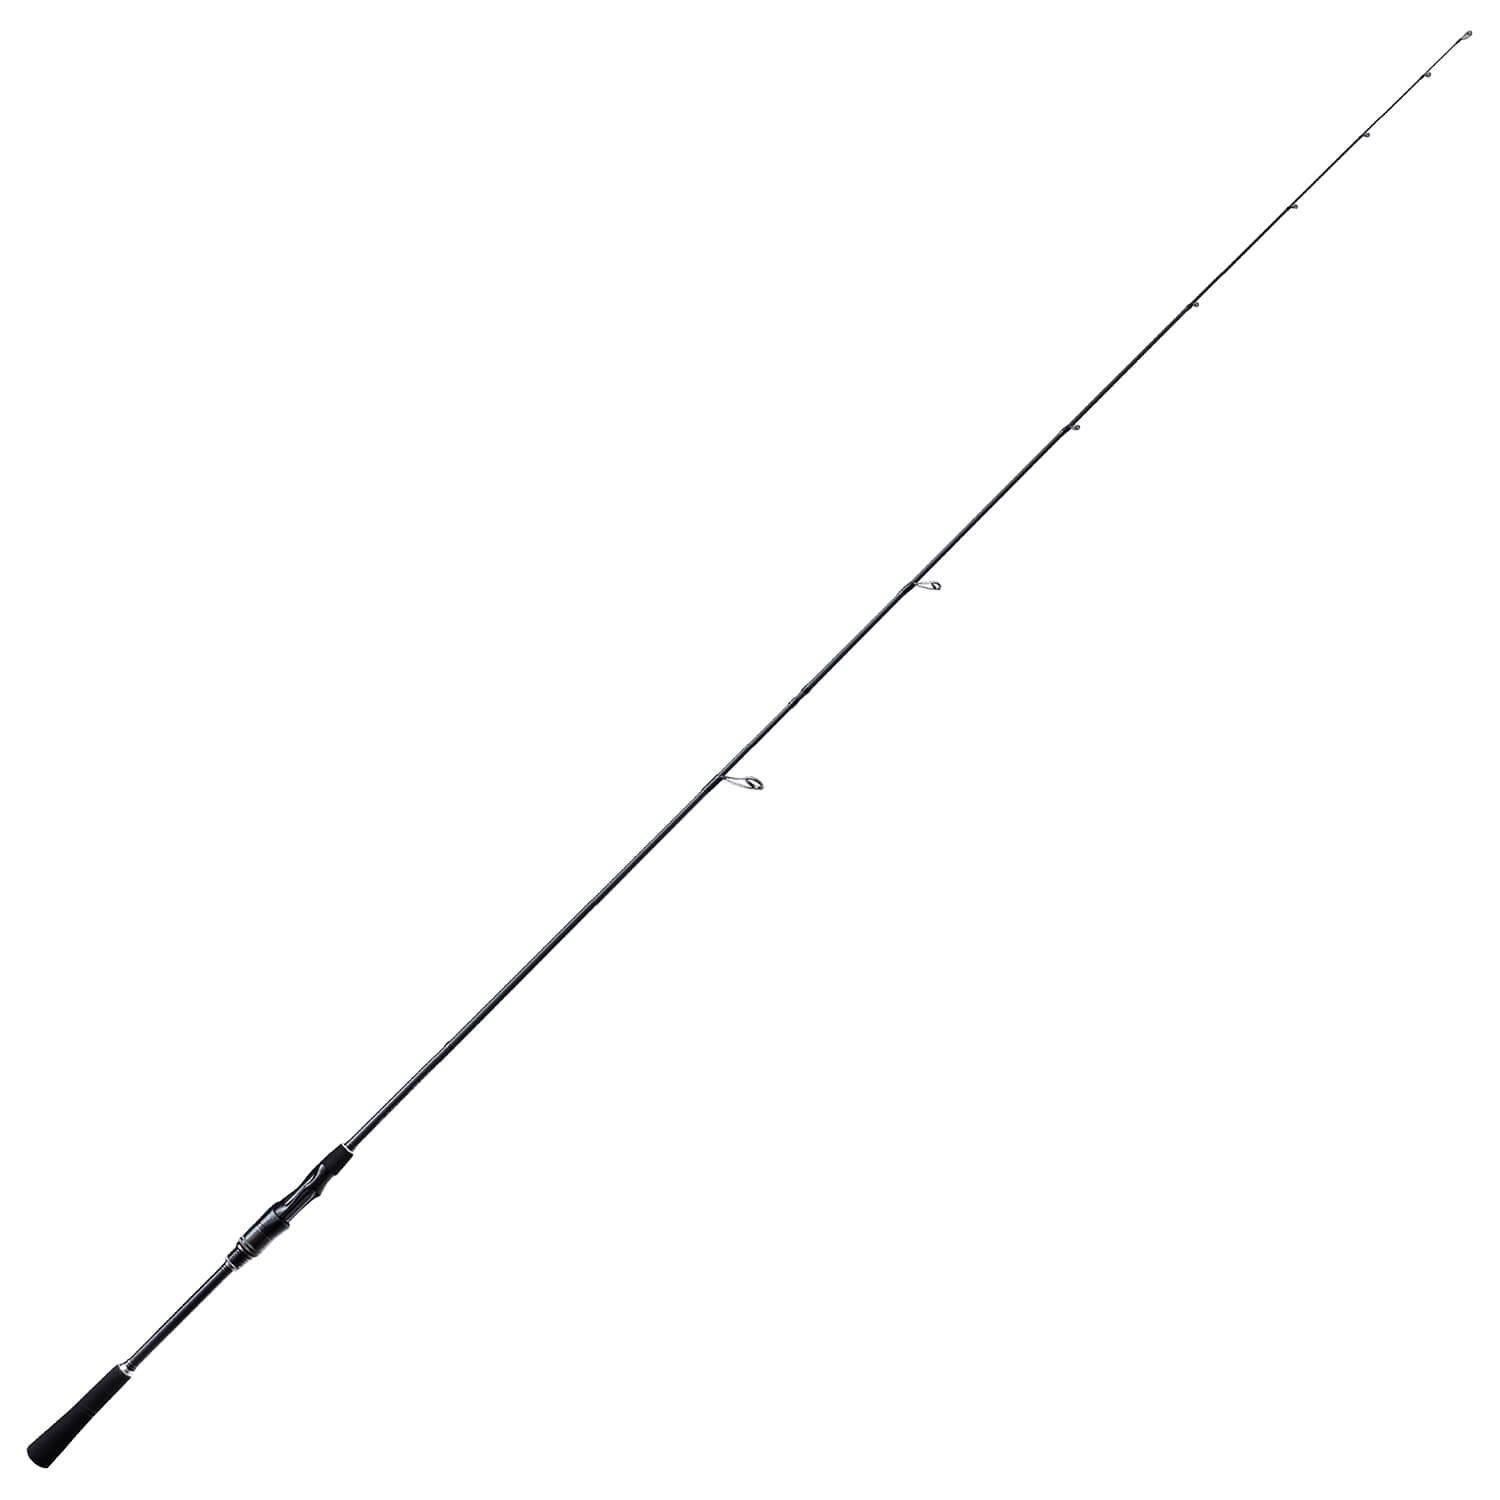 Fishing 6-26g, Bullseye (2-tlg) Spinnrute 2,15m Tip Bullseye Spinnrute Whip